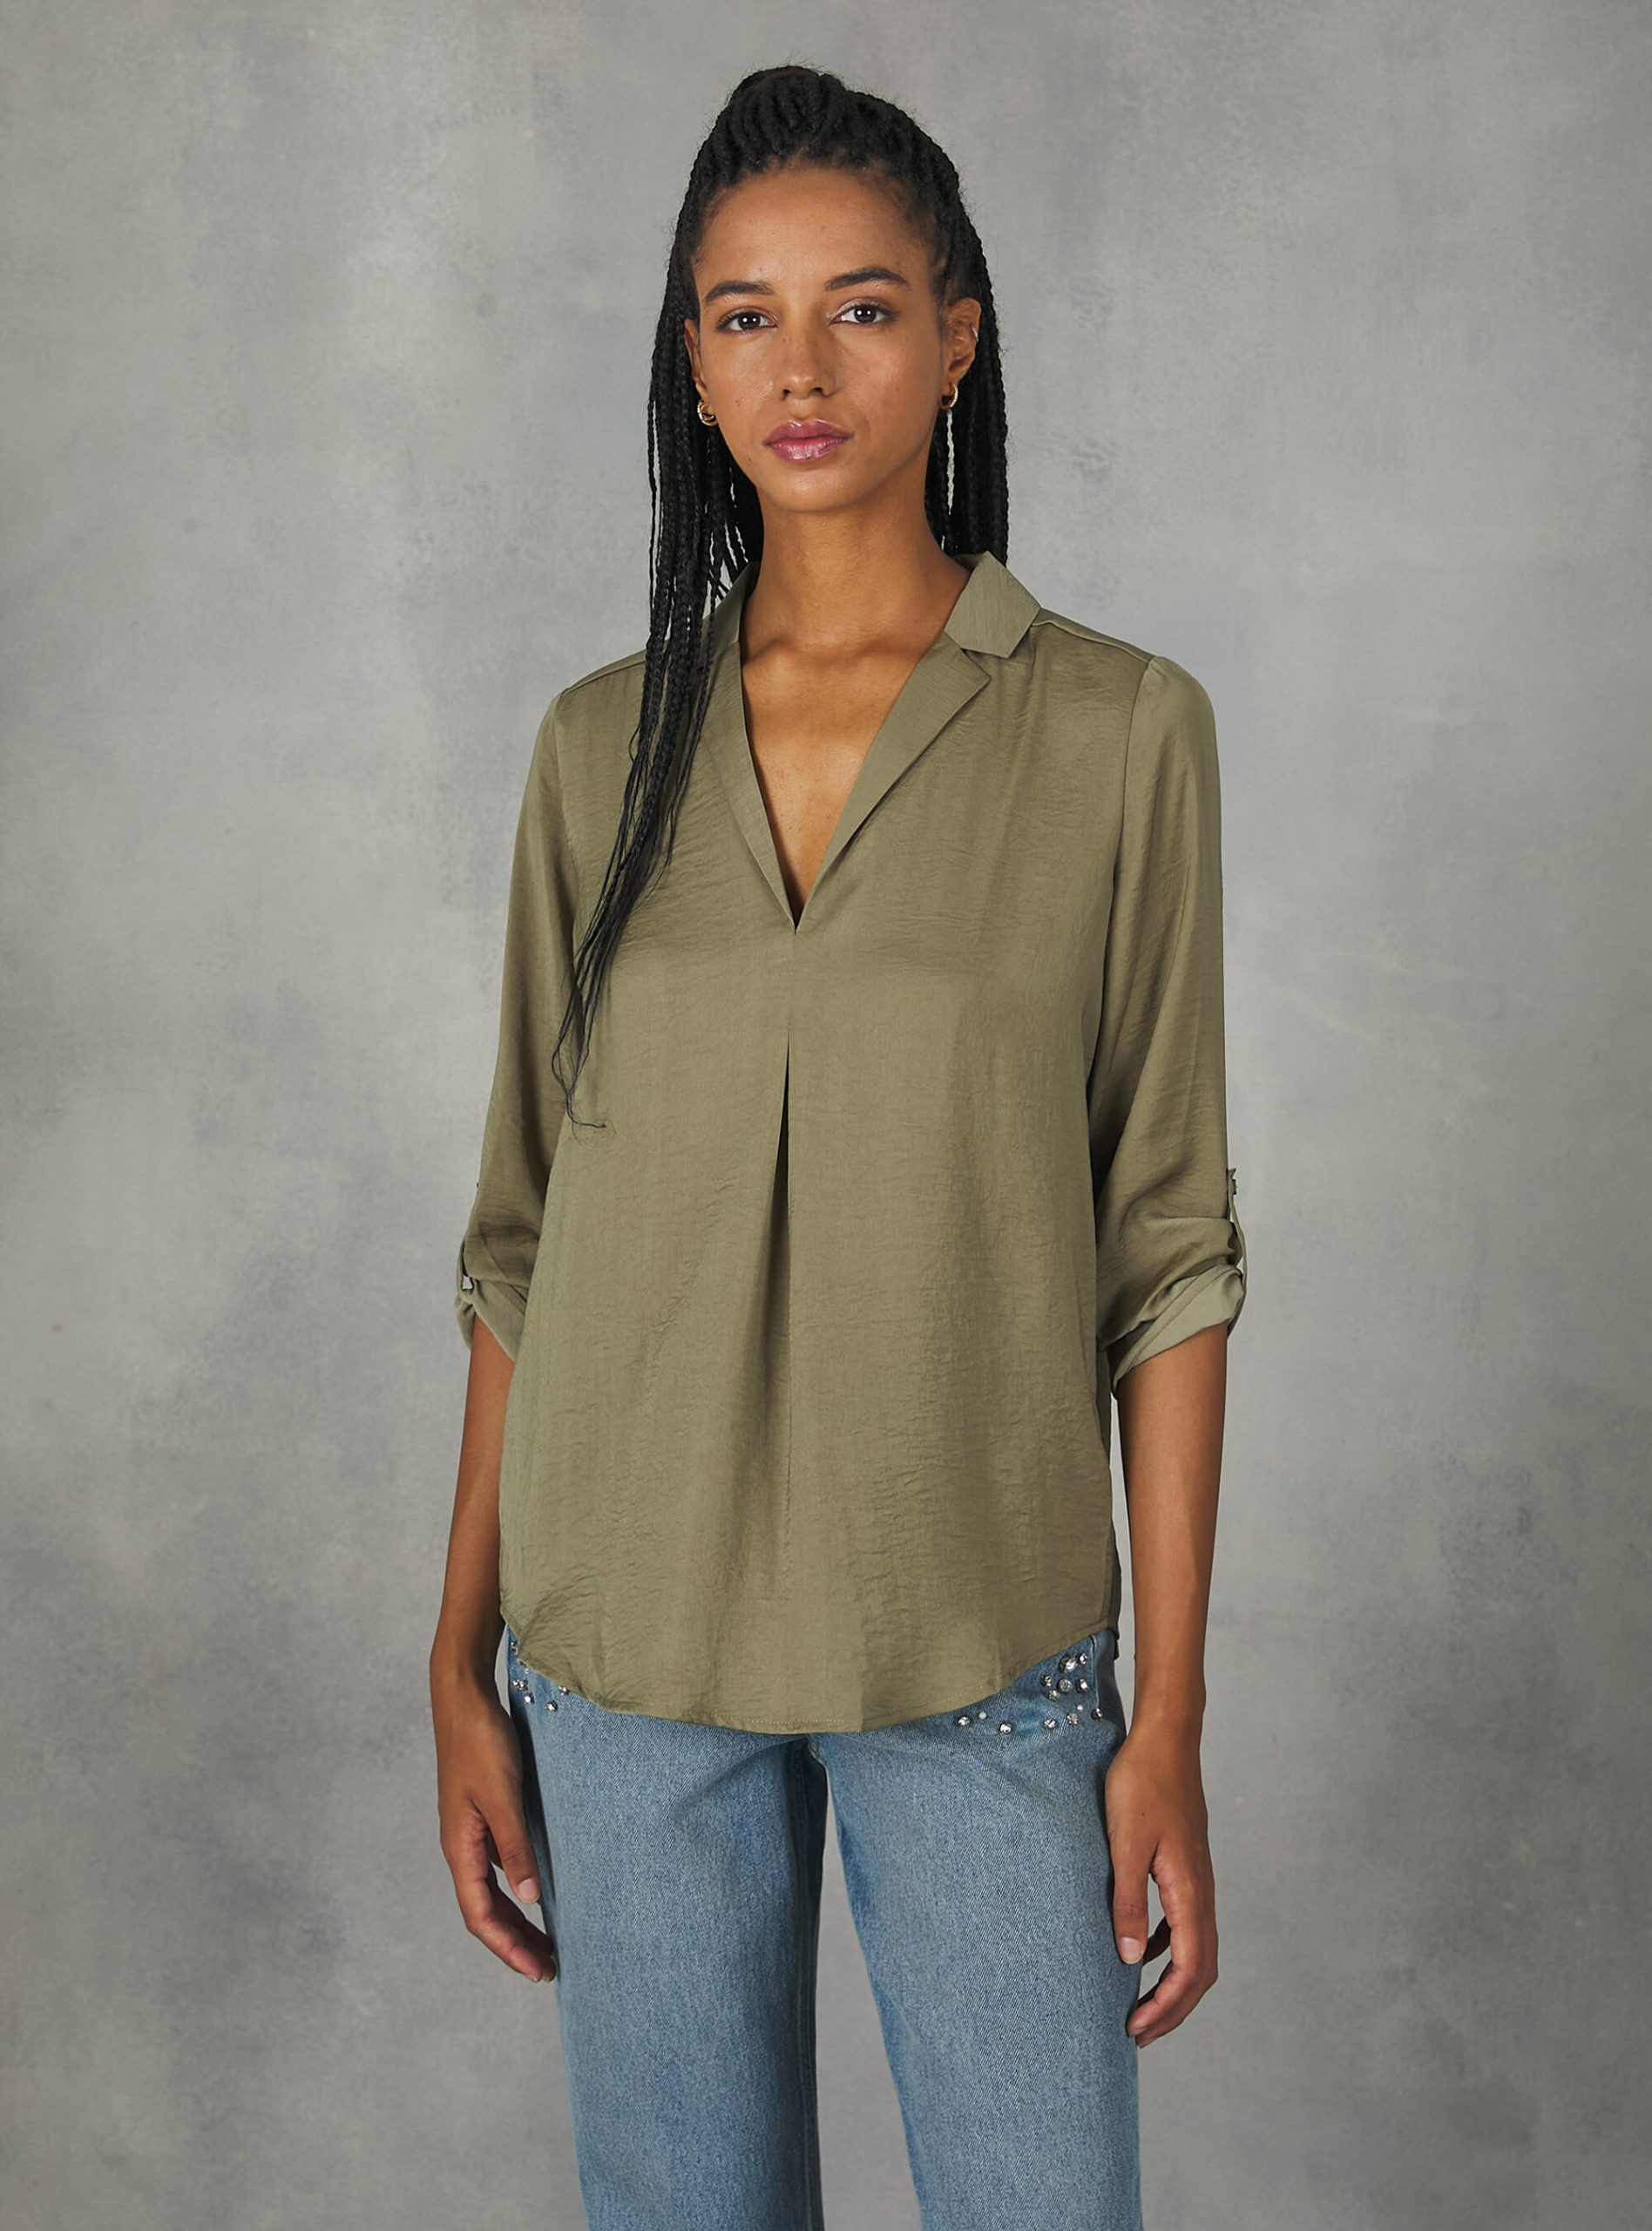 Alcott Ky2 Kaky Medium Hemden Plain-Coloured Blouse With Lapel Neckline Frauen 2024 – 1